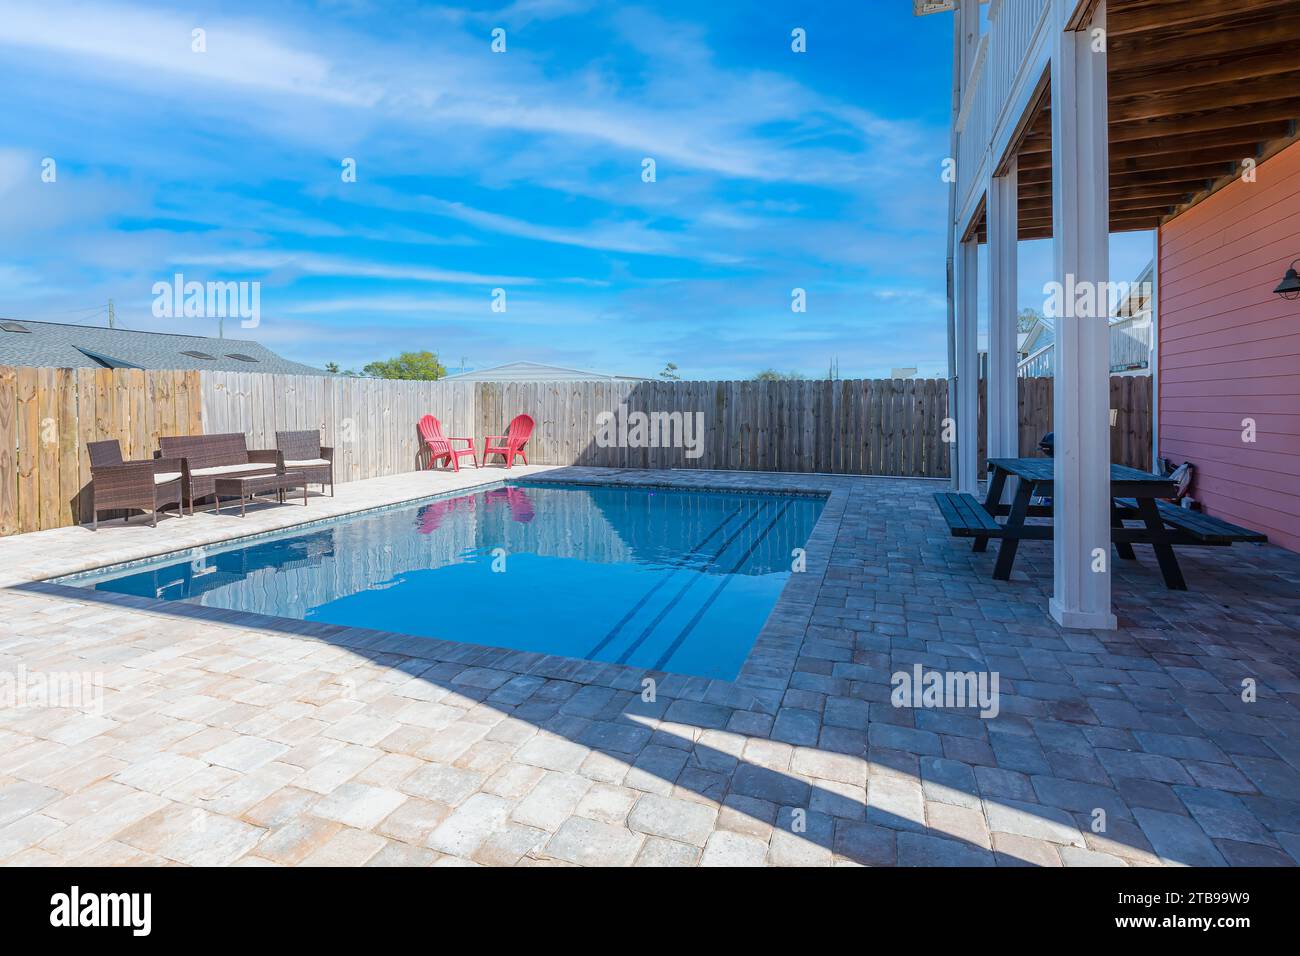 Traumhafte Nachmittage am eingebauten Pool im Garten, umgeben von stilvollen Möbeln, unter dem azurblauen Himmel mit flauschigen weißen Wolken – ein pe Stockfoto